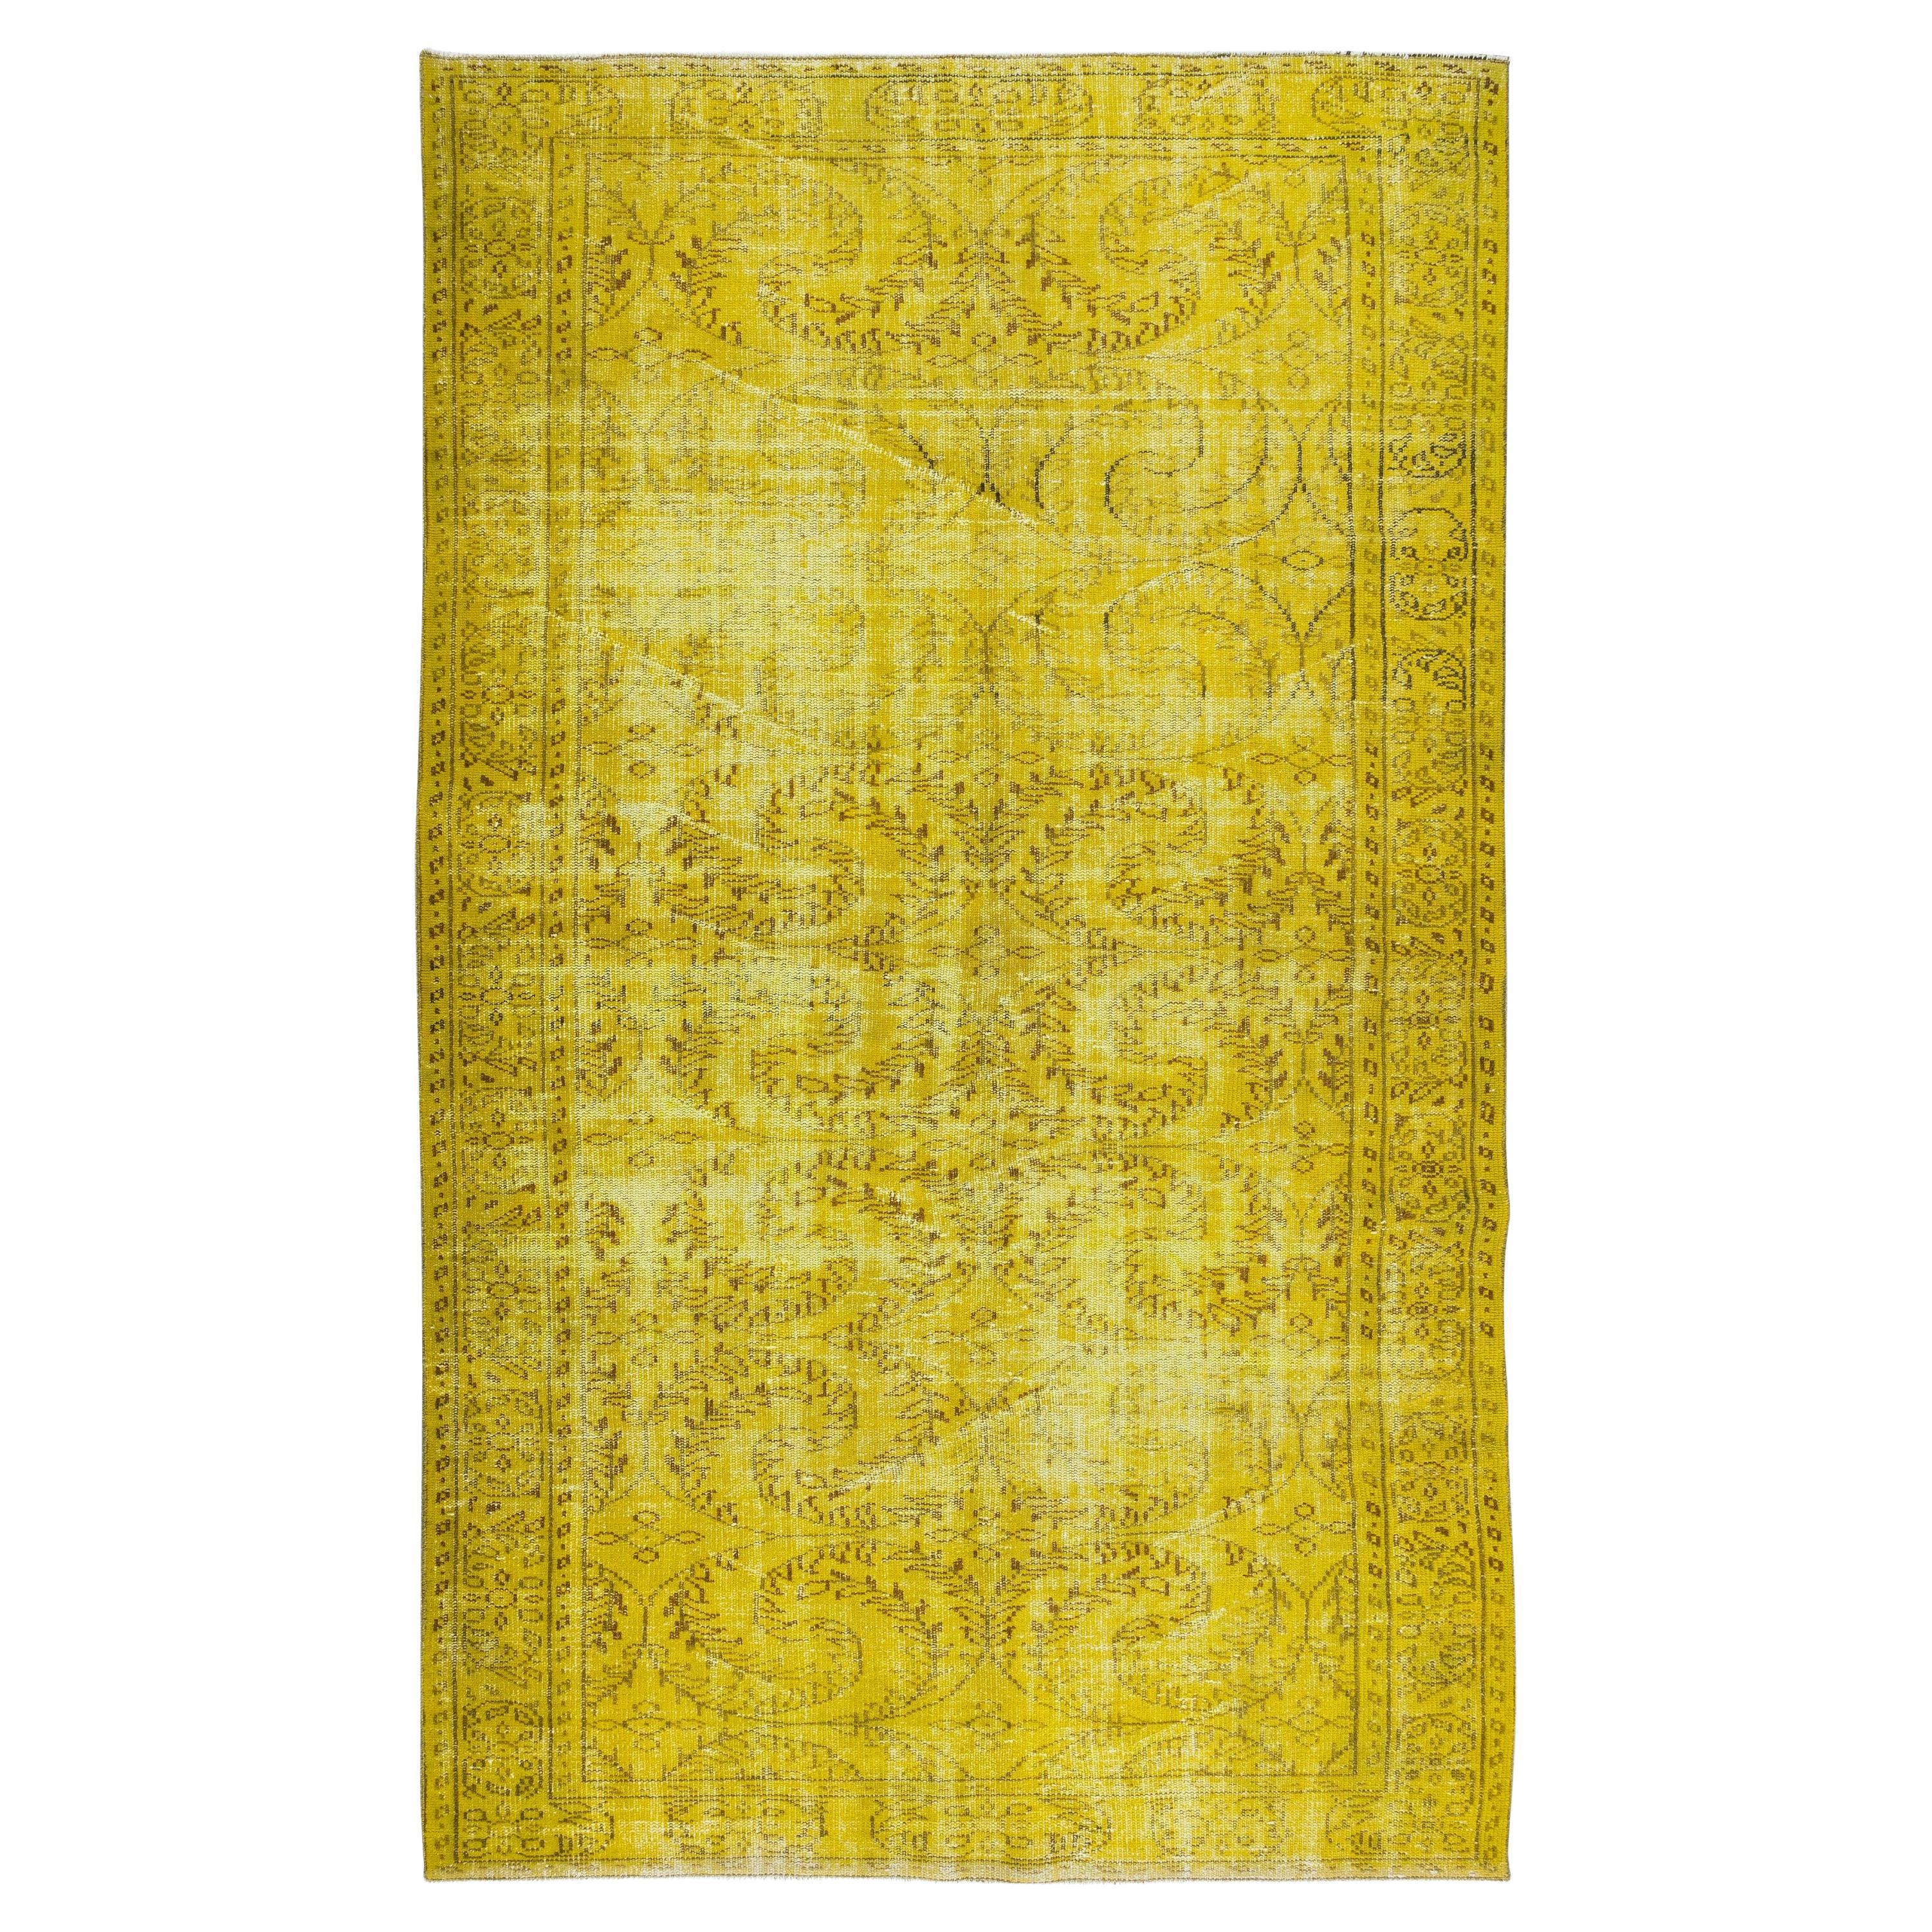 Handgefertigter gelber Overdyed-Teppich, Vintage-Deko-Teppich aus der Türkei